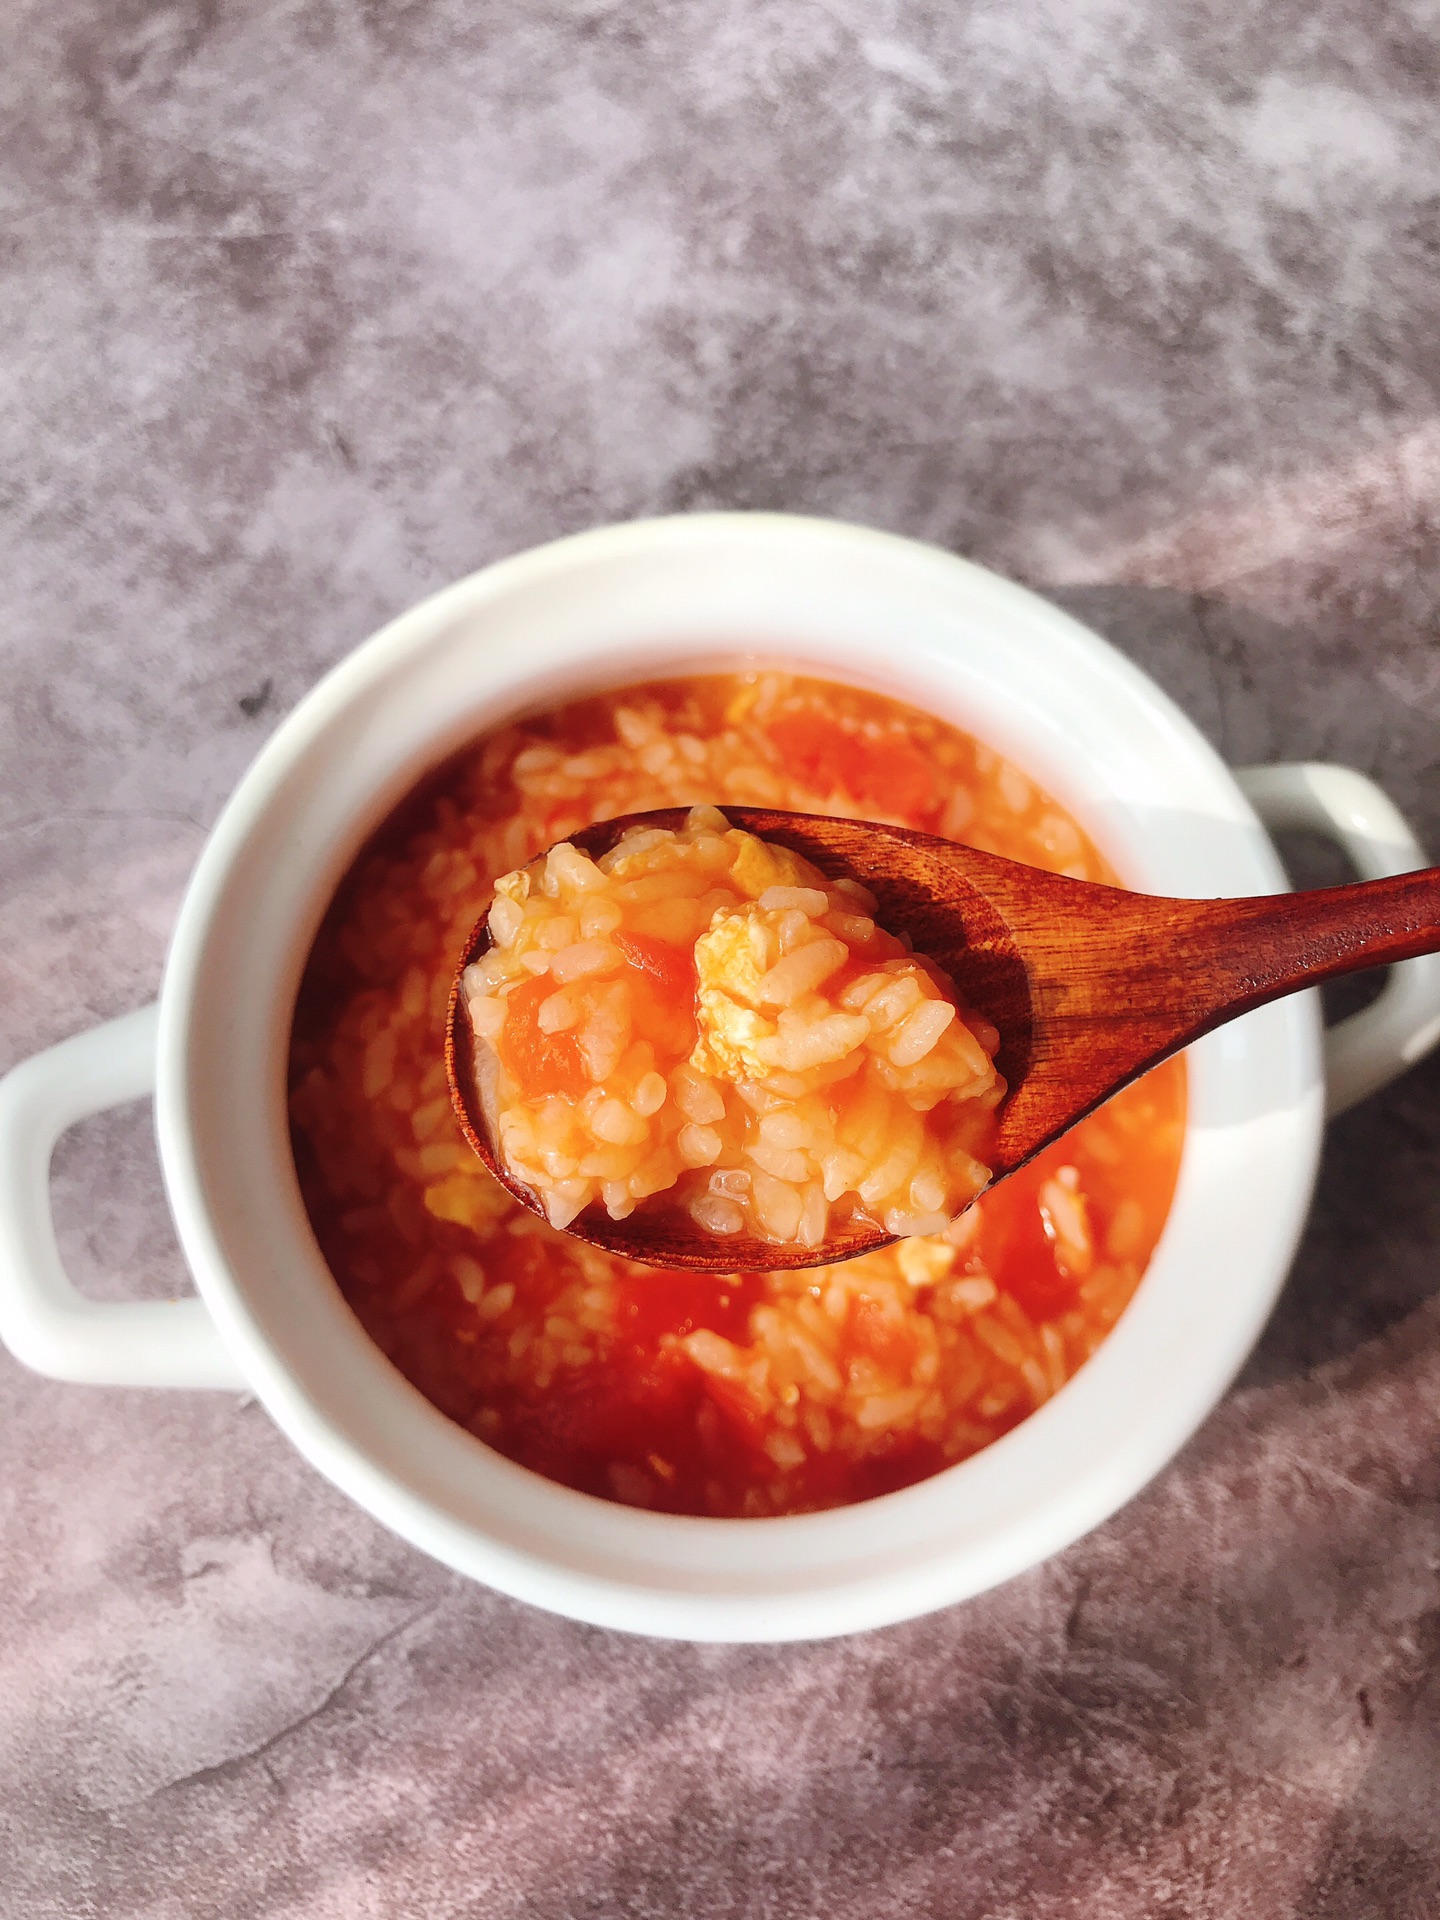 剩米饭的好归宿：番茄烩饭